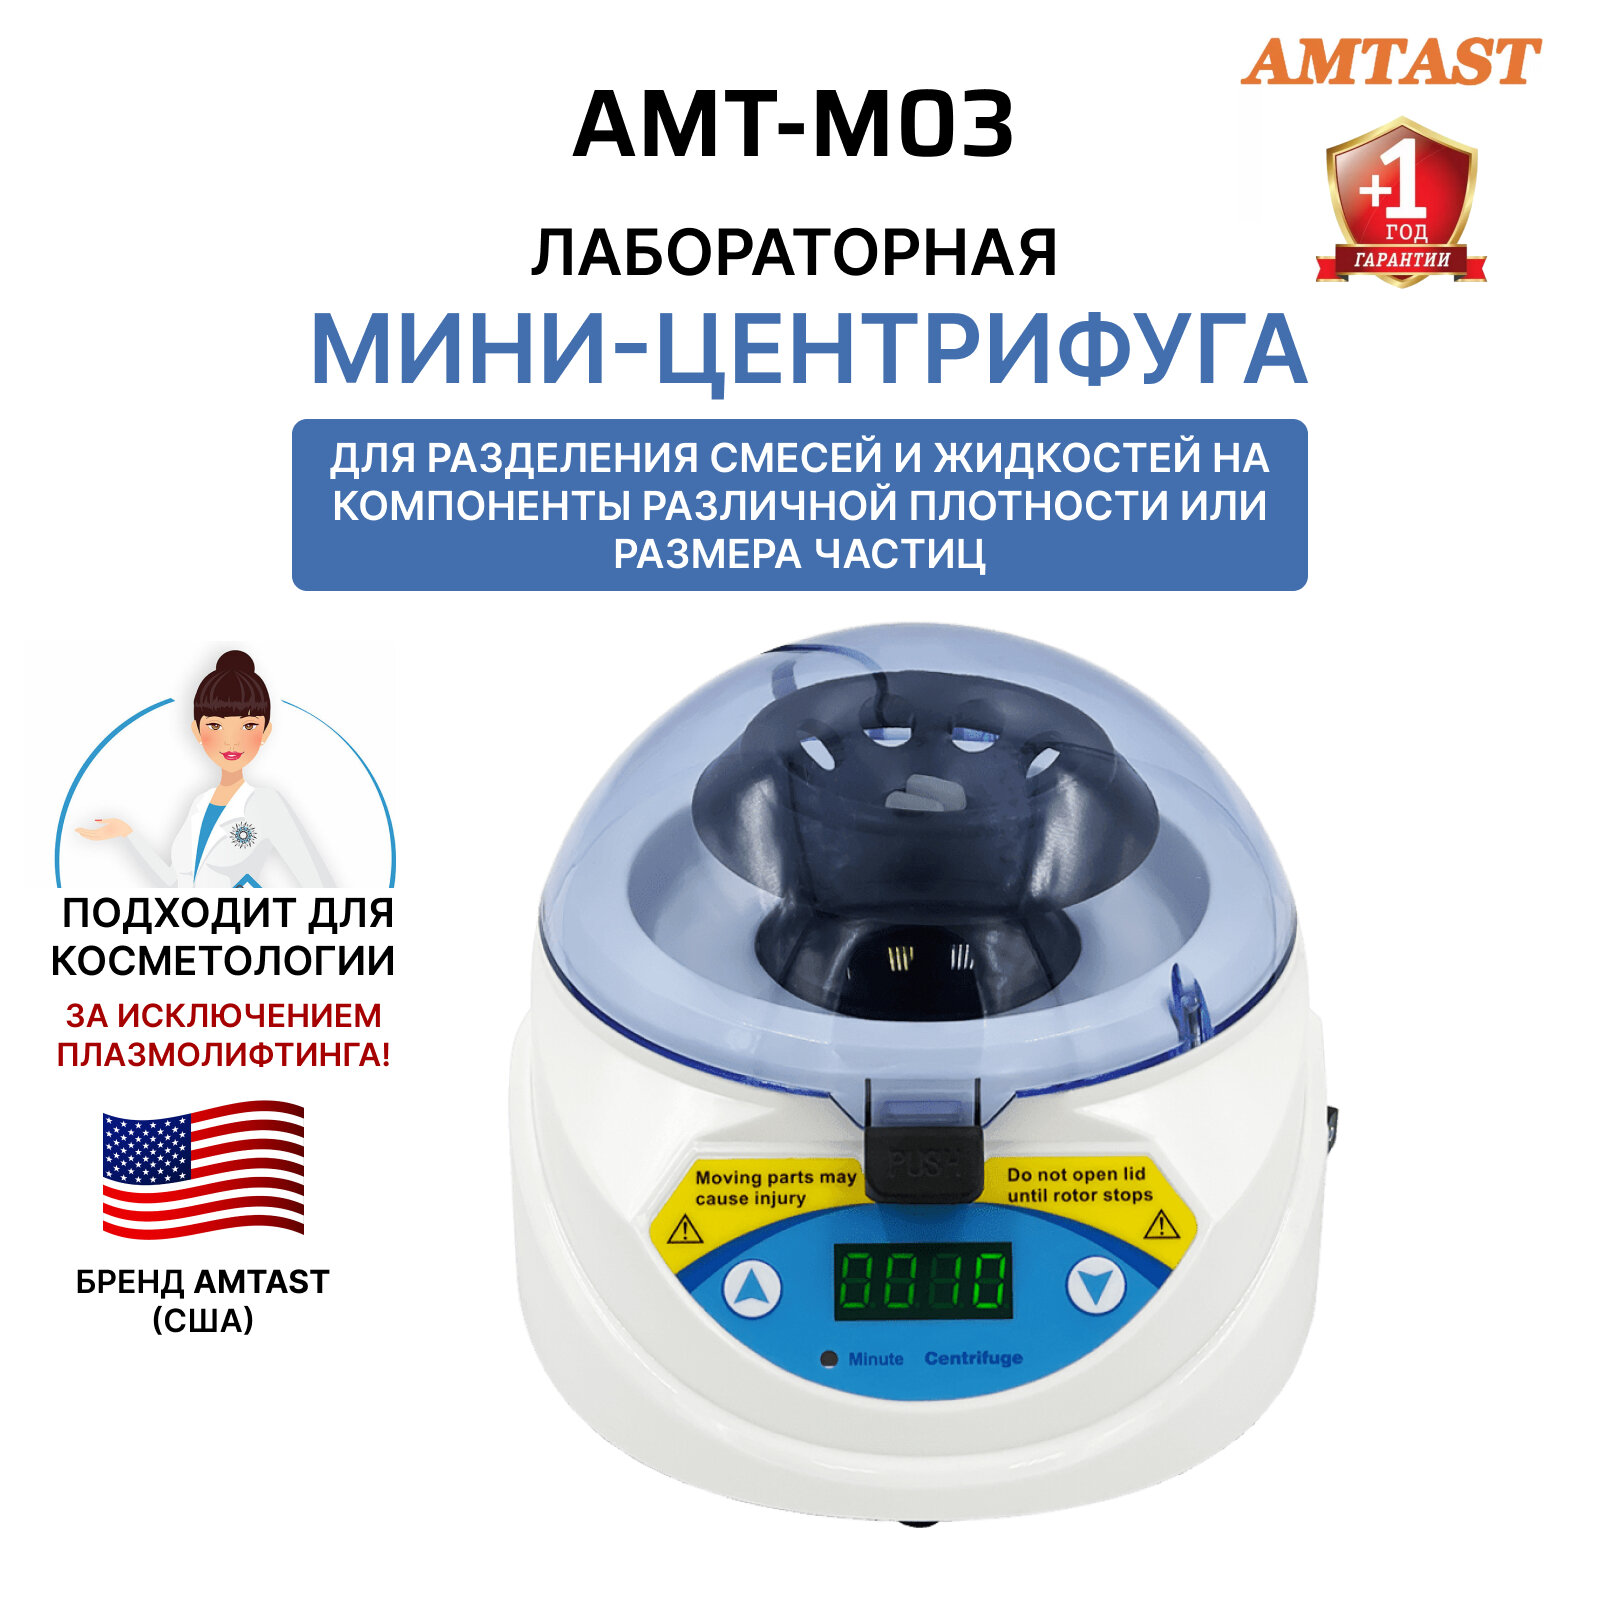 Высокоскоростная лабораторная мини-центрифуга AMT-M03